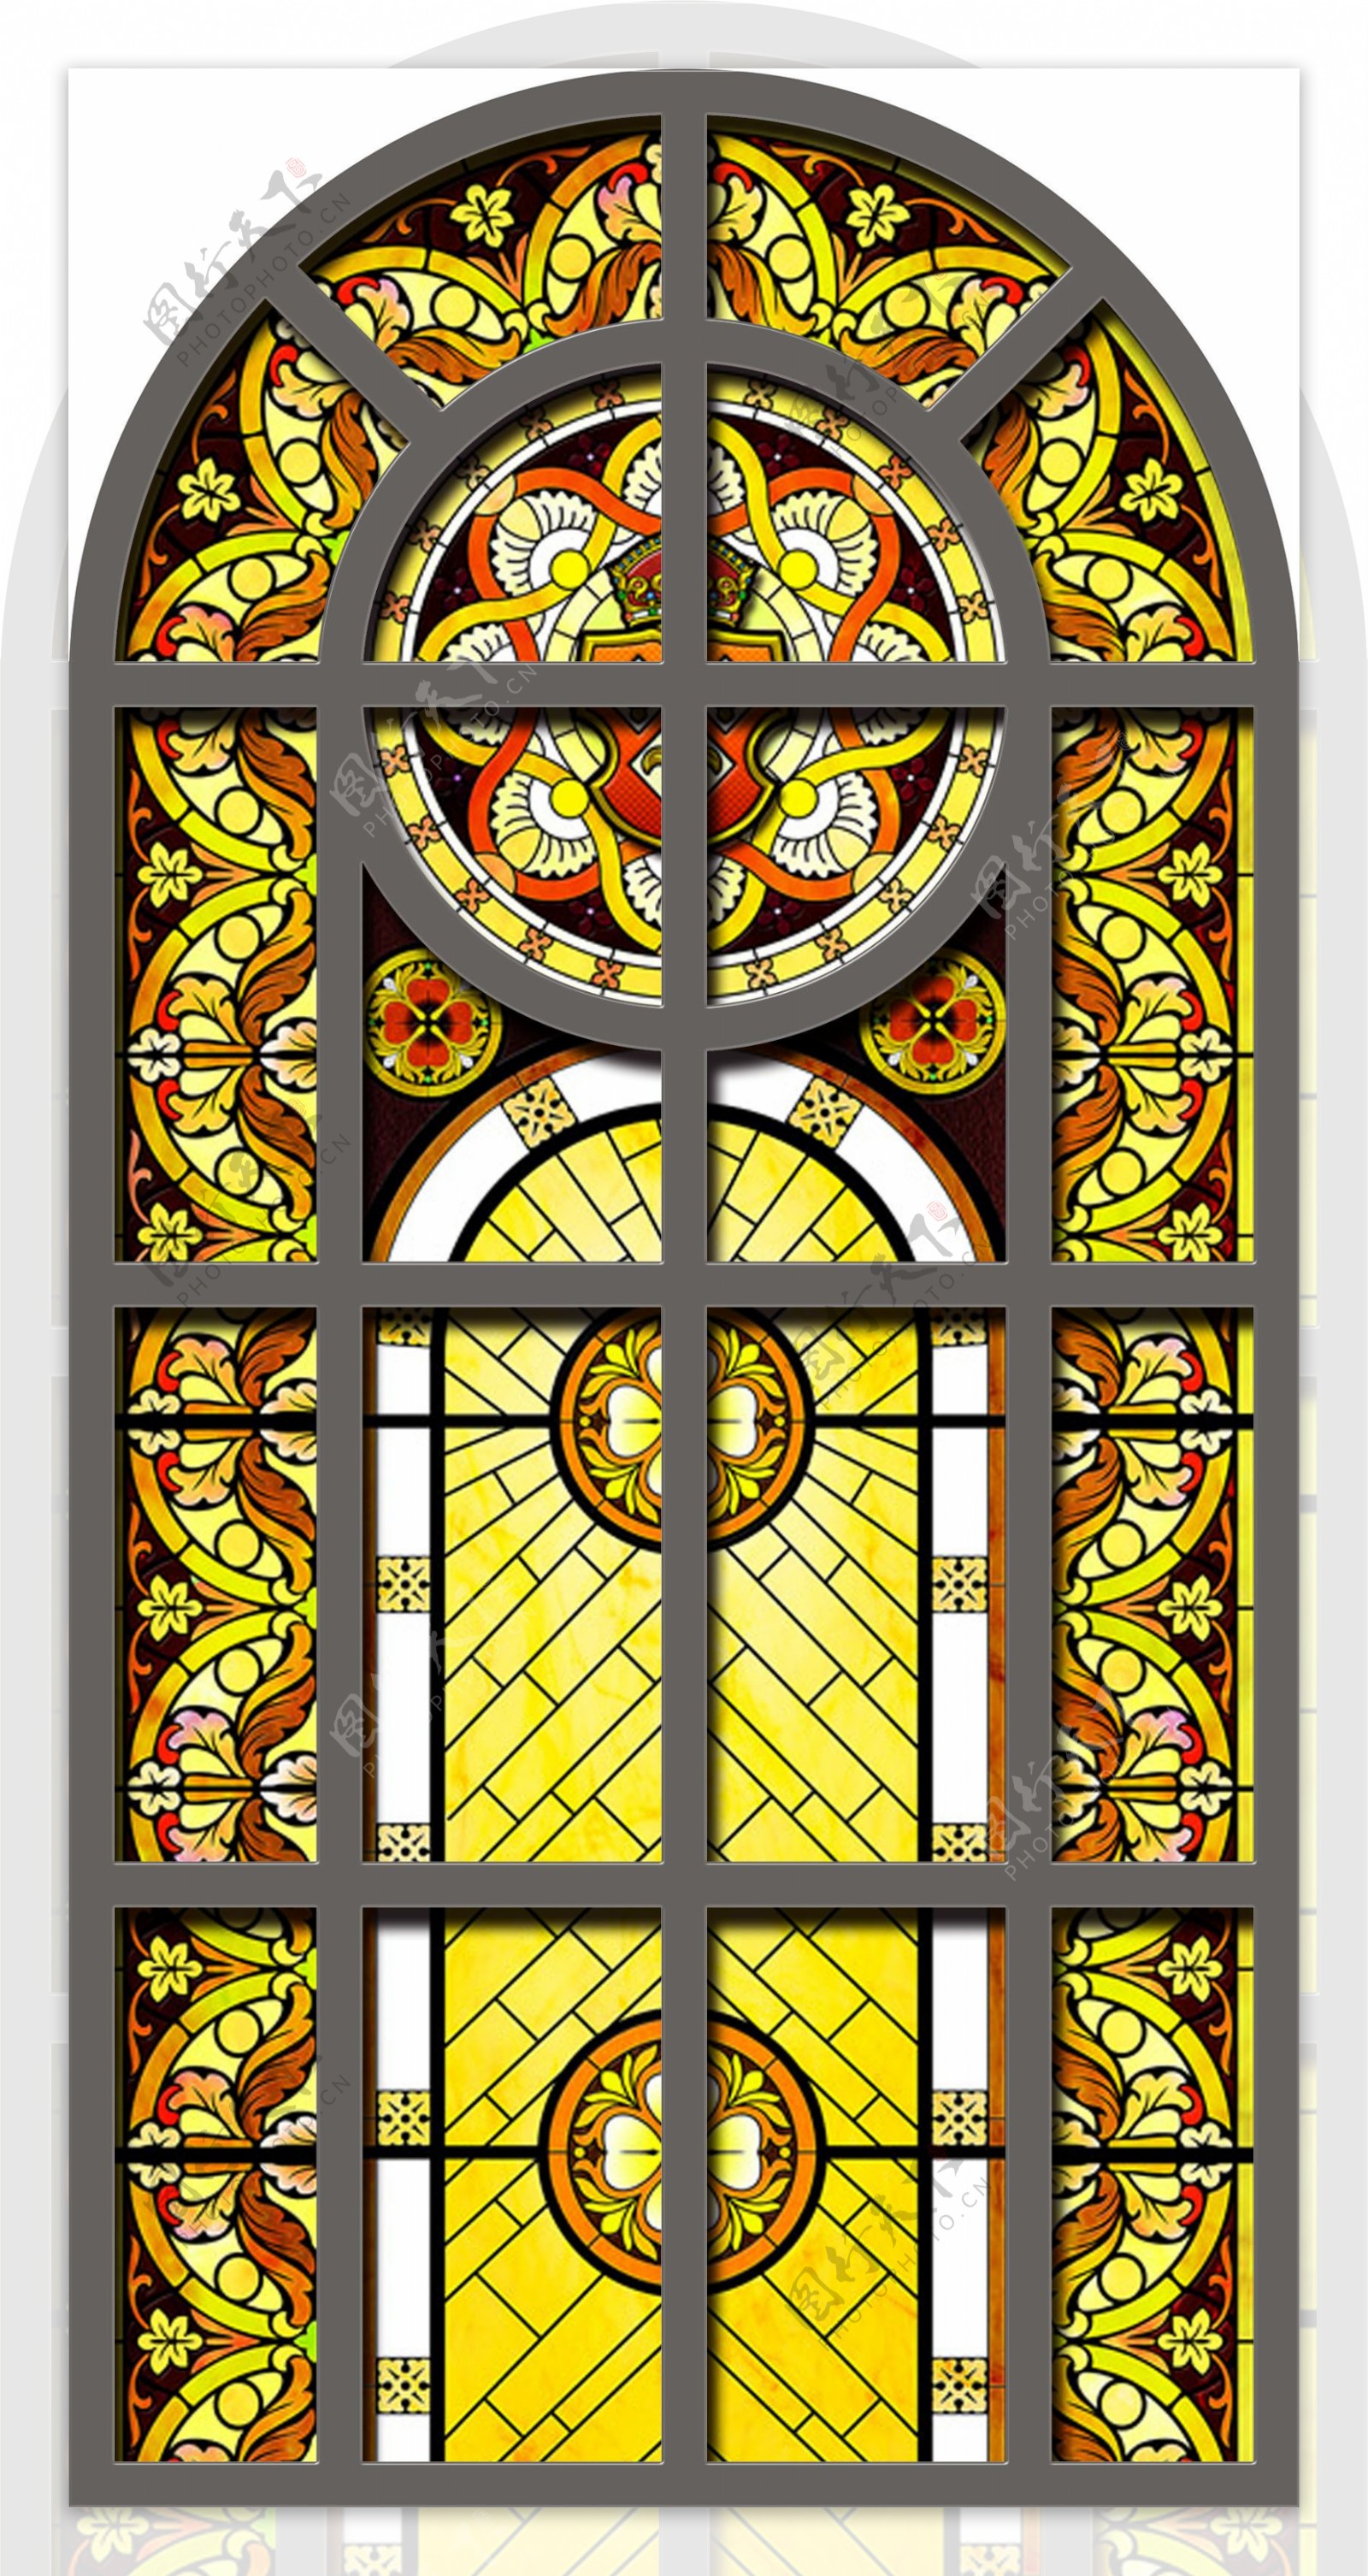 教堂玻璃图案图片